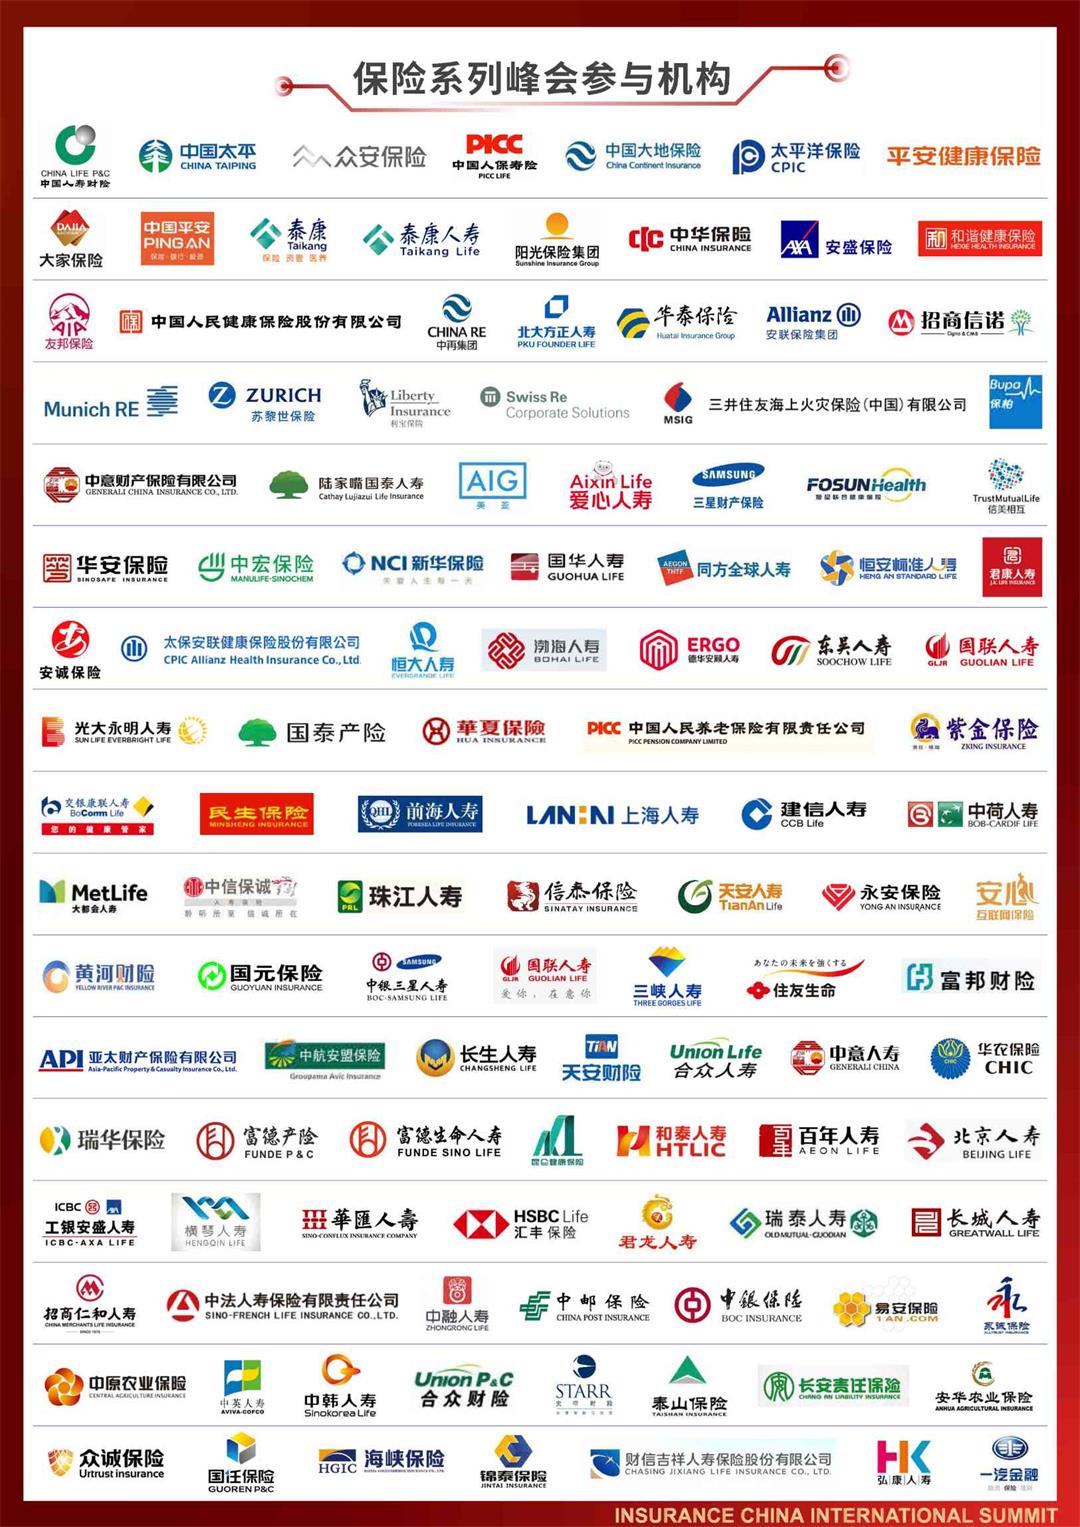 2023第十一屆中國保險產業國際峰會